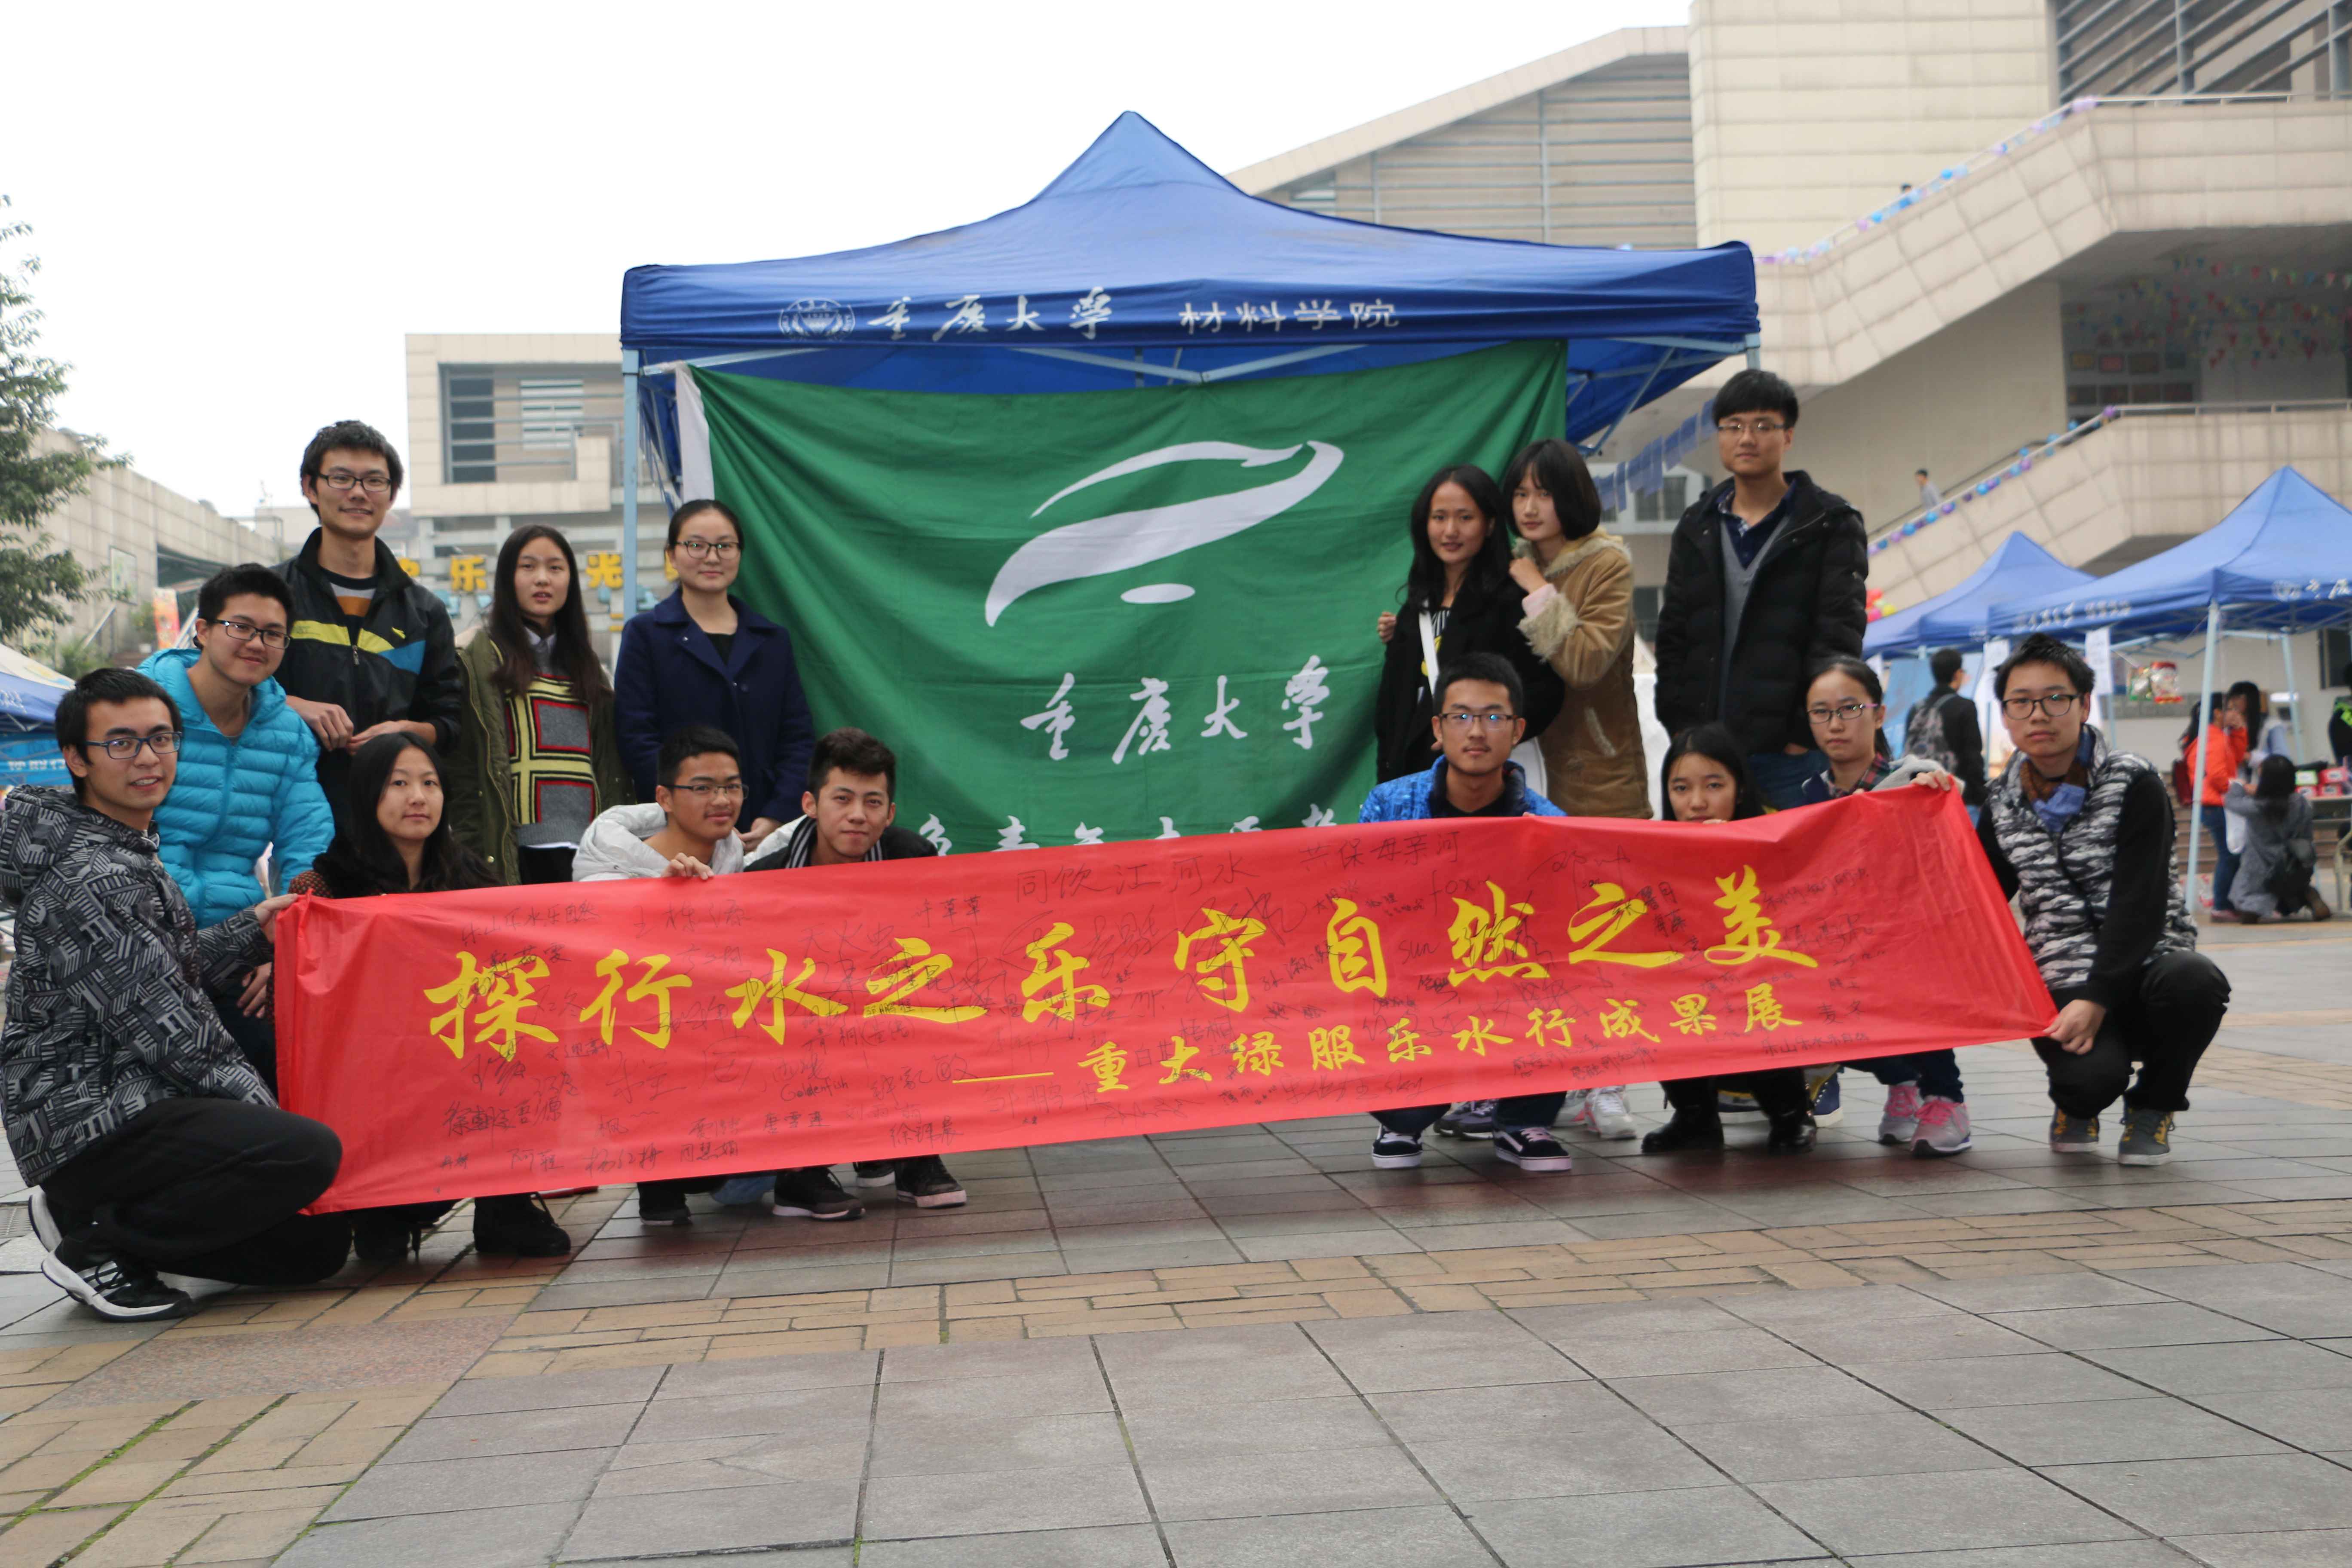 重慶大學綠色青年志願者服務隊